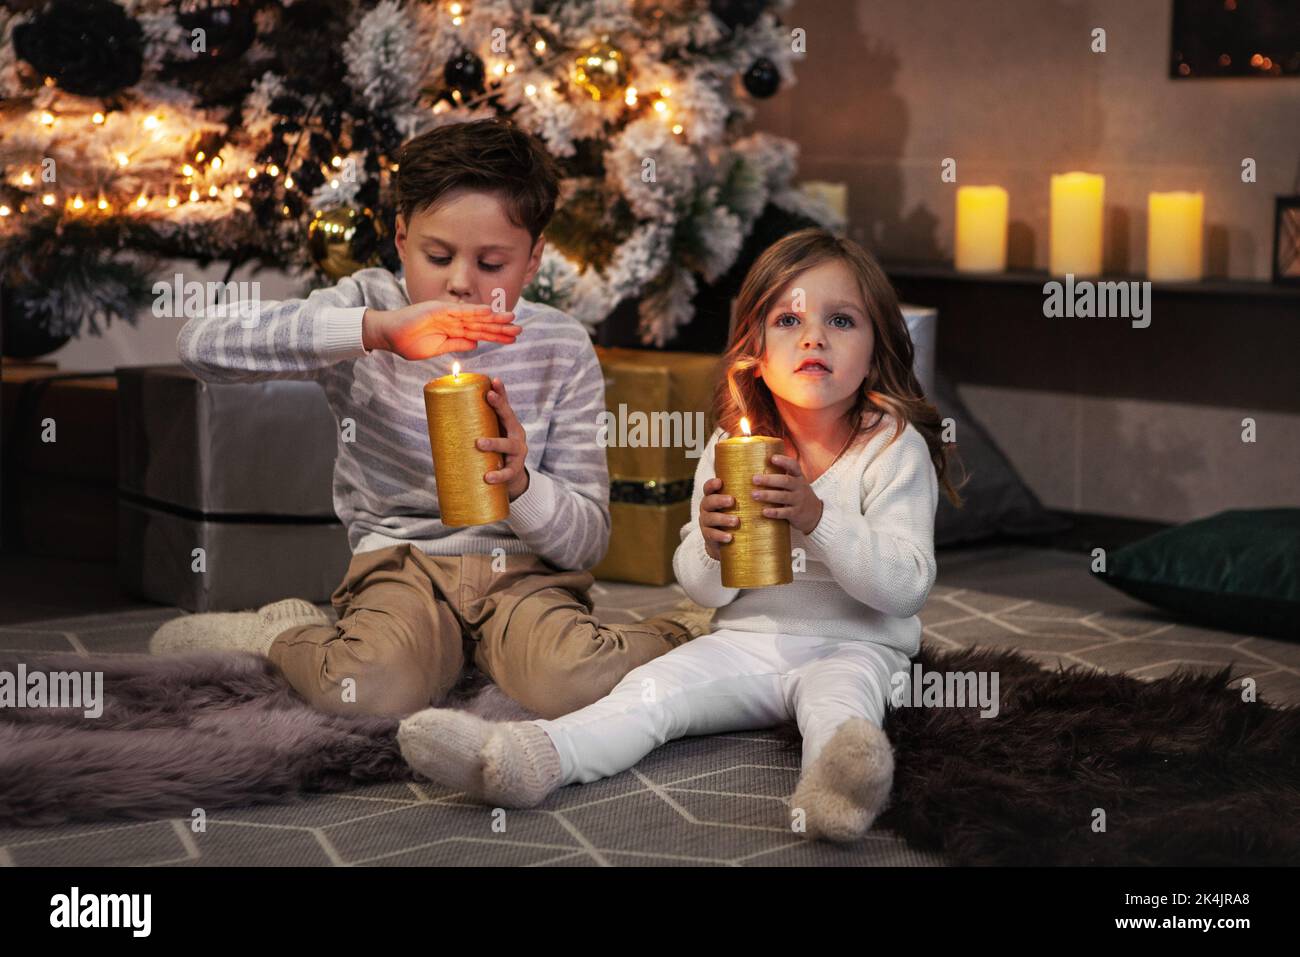 Adorables enfants, garçon et fille tenant des bougies jaunes et faisant le souhait. Frère et jolie sœur assis sur le sol dans une pièce sombre. Arbre de Noël et pros Banque D'Images